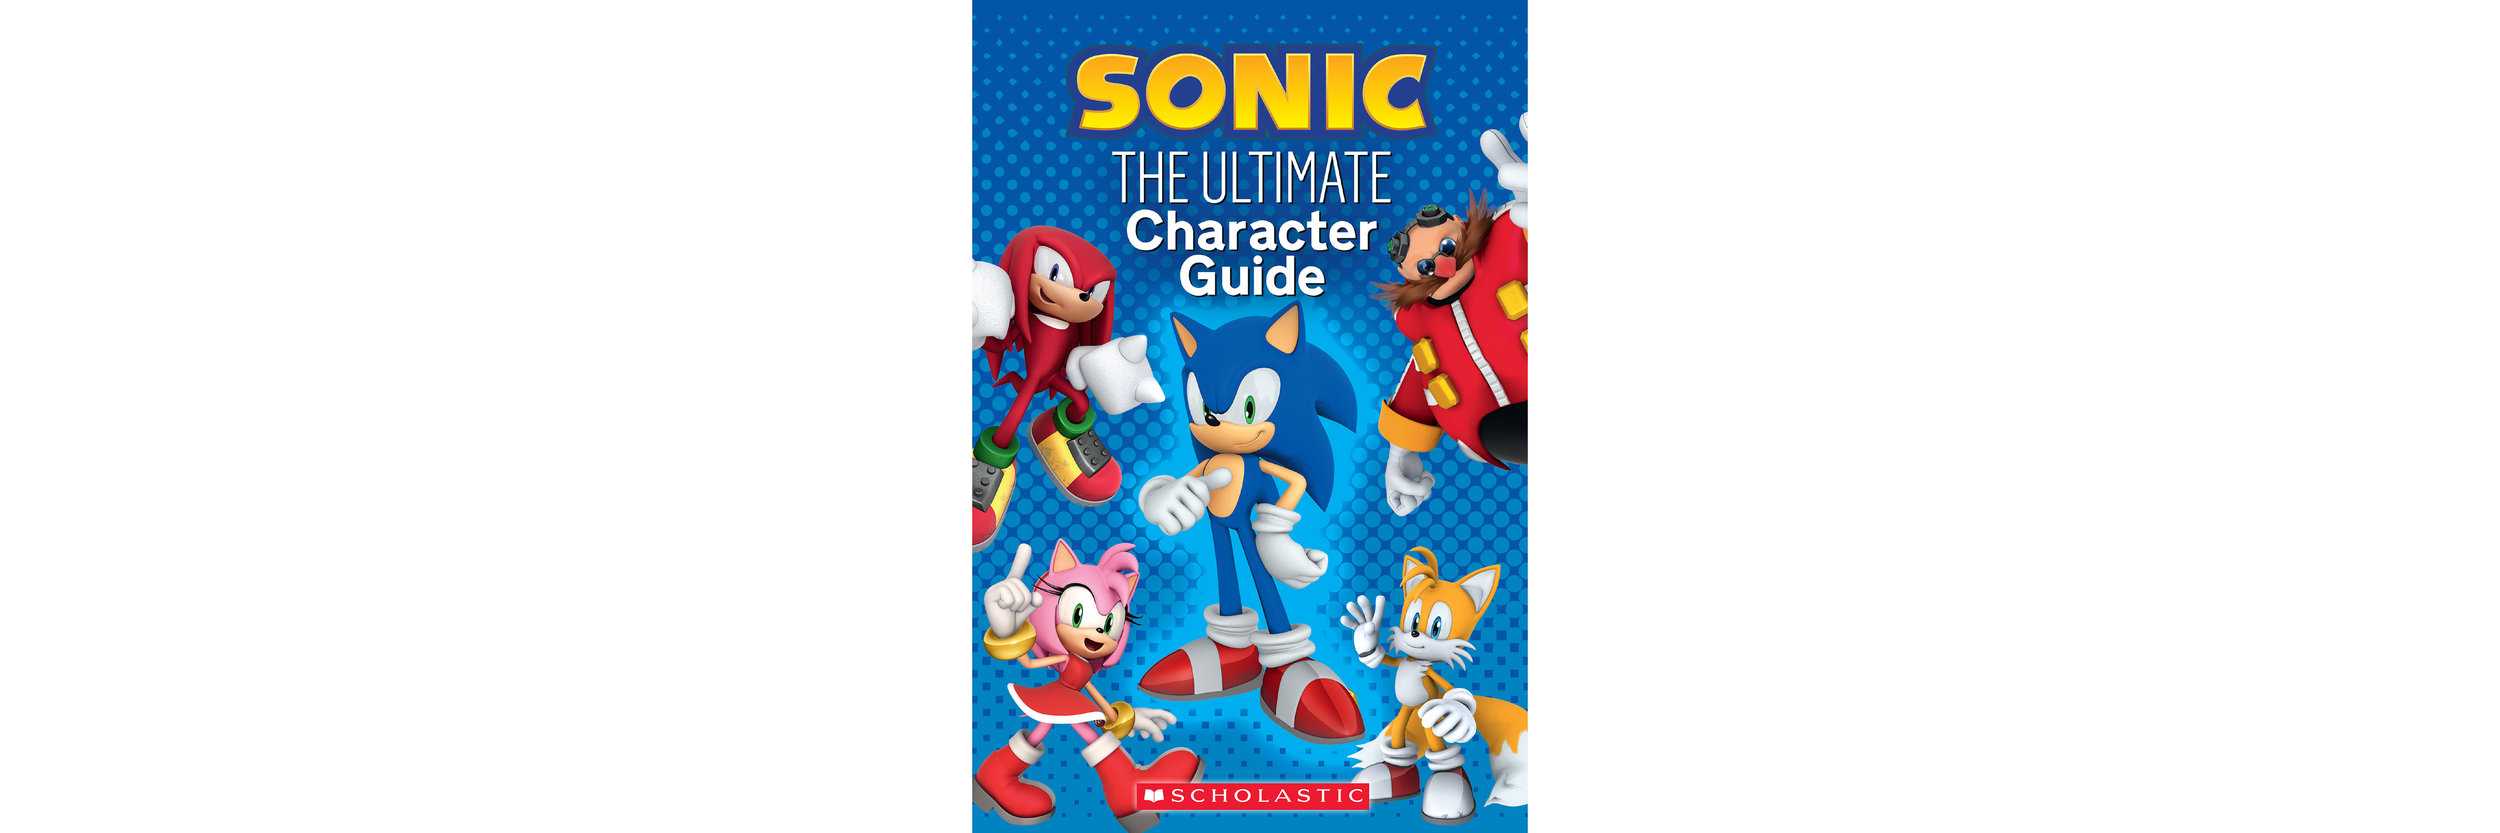 Sonic Guide-0-cov-300.jpg